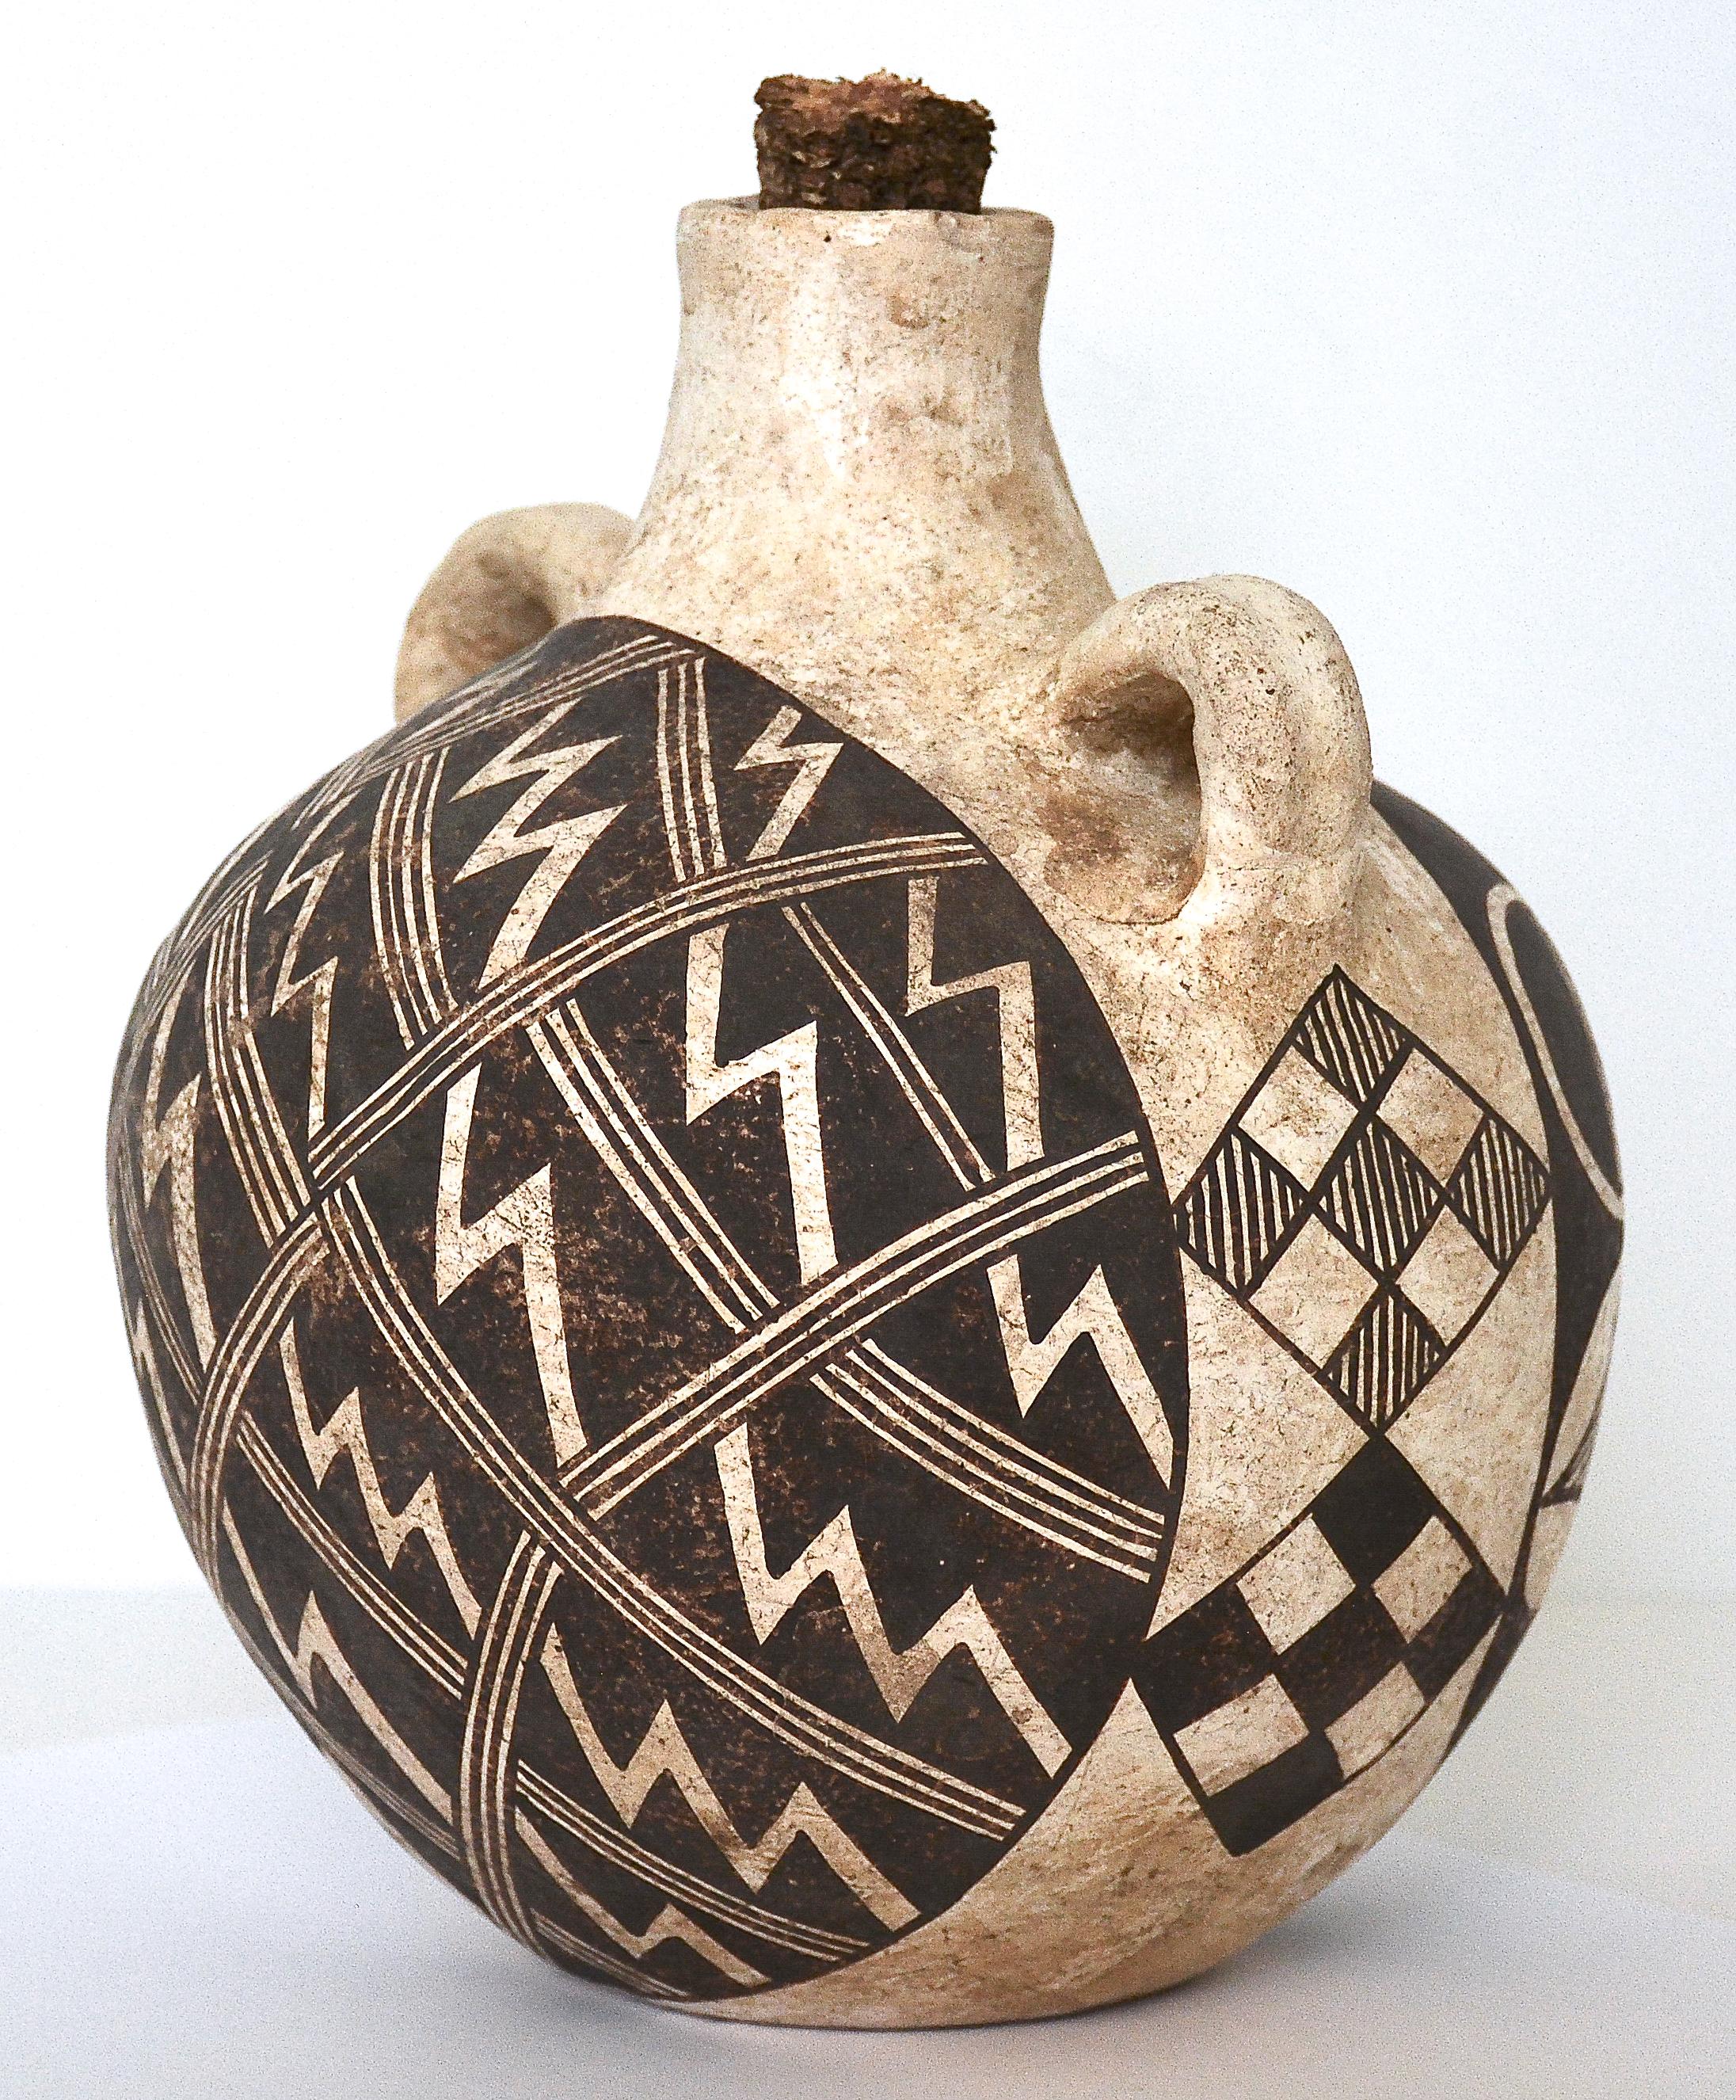 Töpferwaren-Kasten aus polychromer Keramik
Acoma
1920
Maße: 8 Zoll Höhe x 6 Zoll Durchmesser.
Ton, Mineralpigmente, Füllkorn. 

Ein wunderbares Beispiel für ein antikes, polychromes Acoma Pueblo-Keramikgeschirr um 1920 mit zweiseitigen